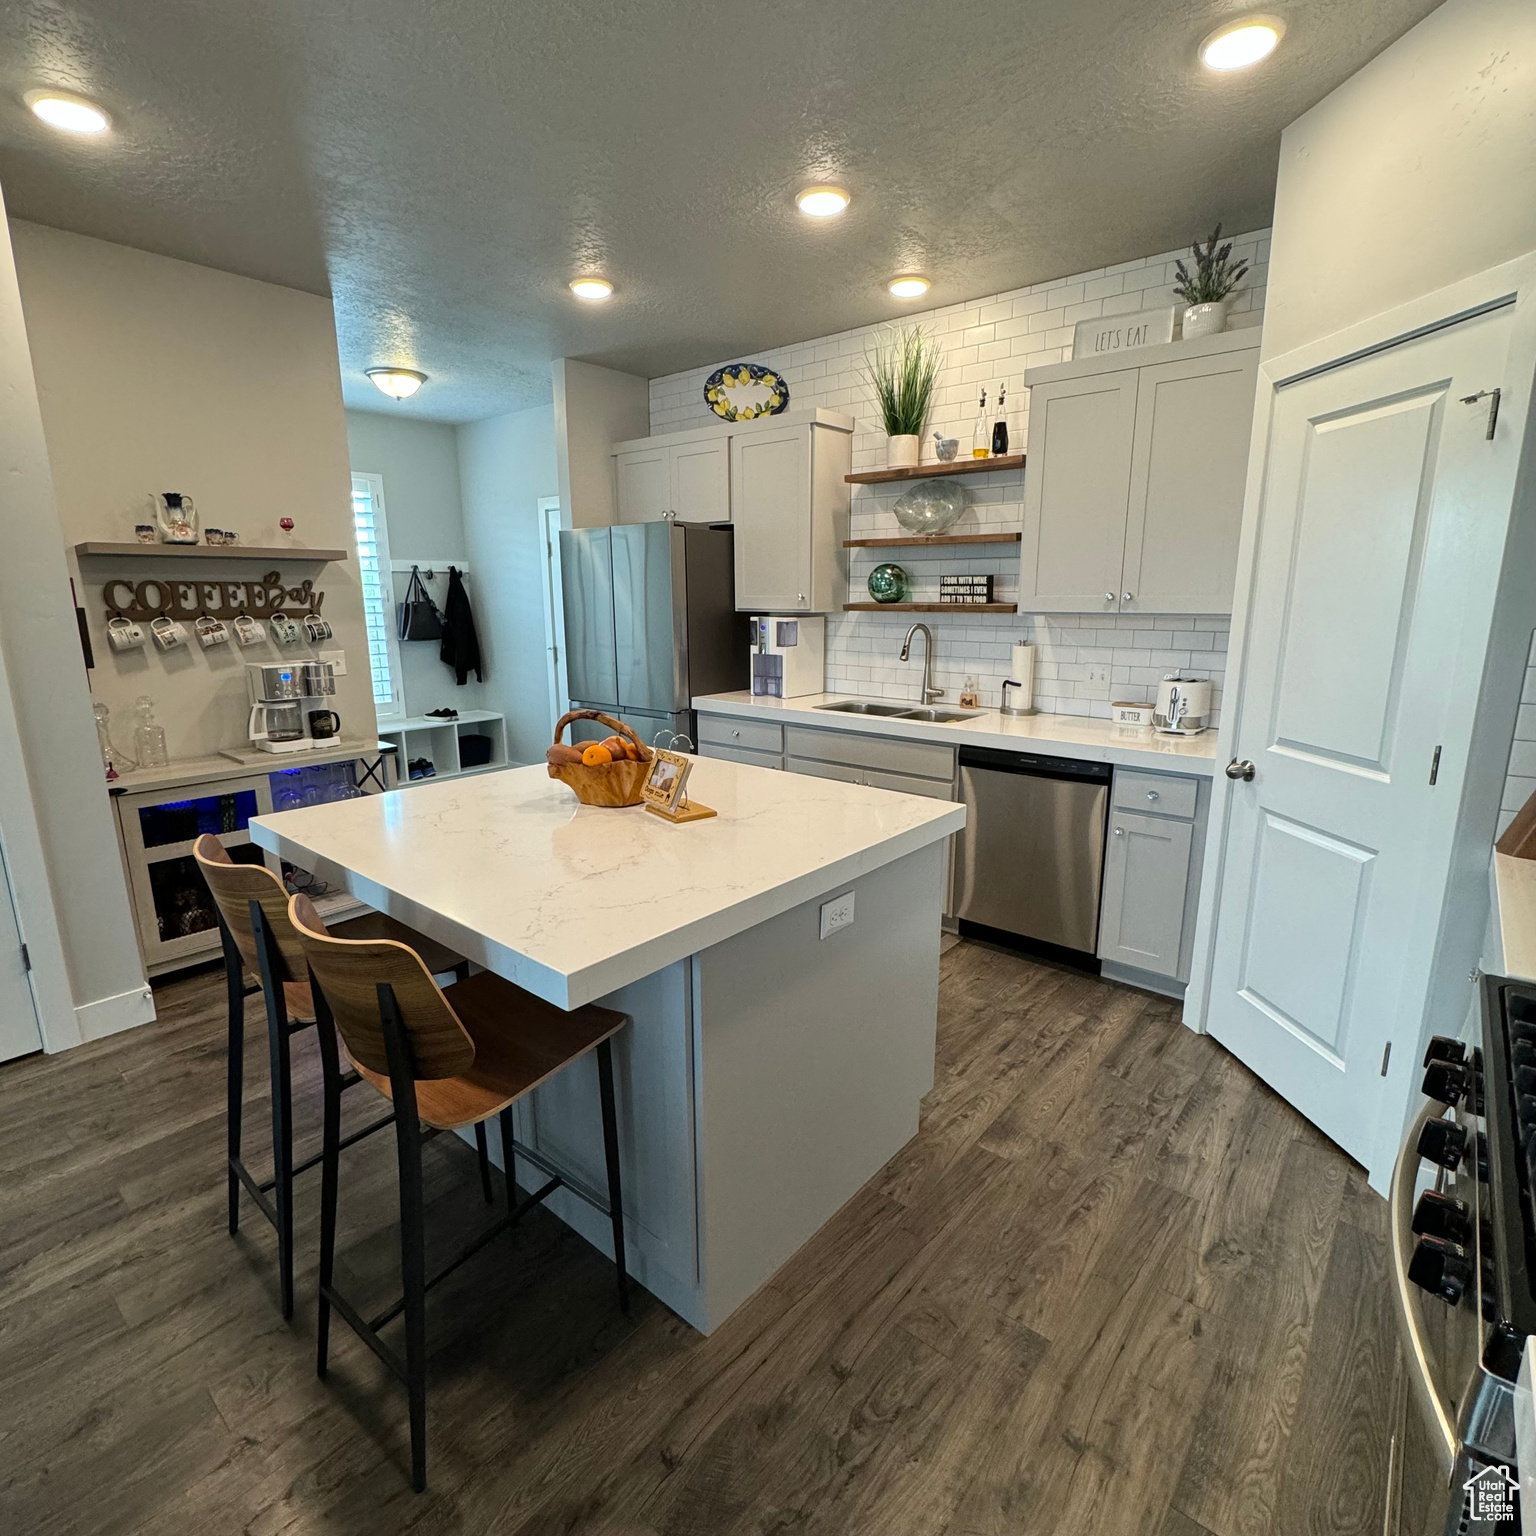 Kitchen featuring a kitchen island, sink, dark hardwood / wood-style flooring, stainless steel appliances, and a kitchen breakfast bar